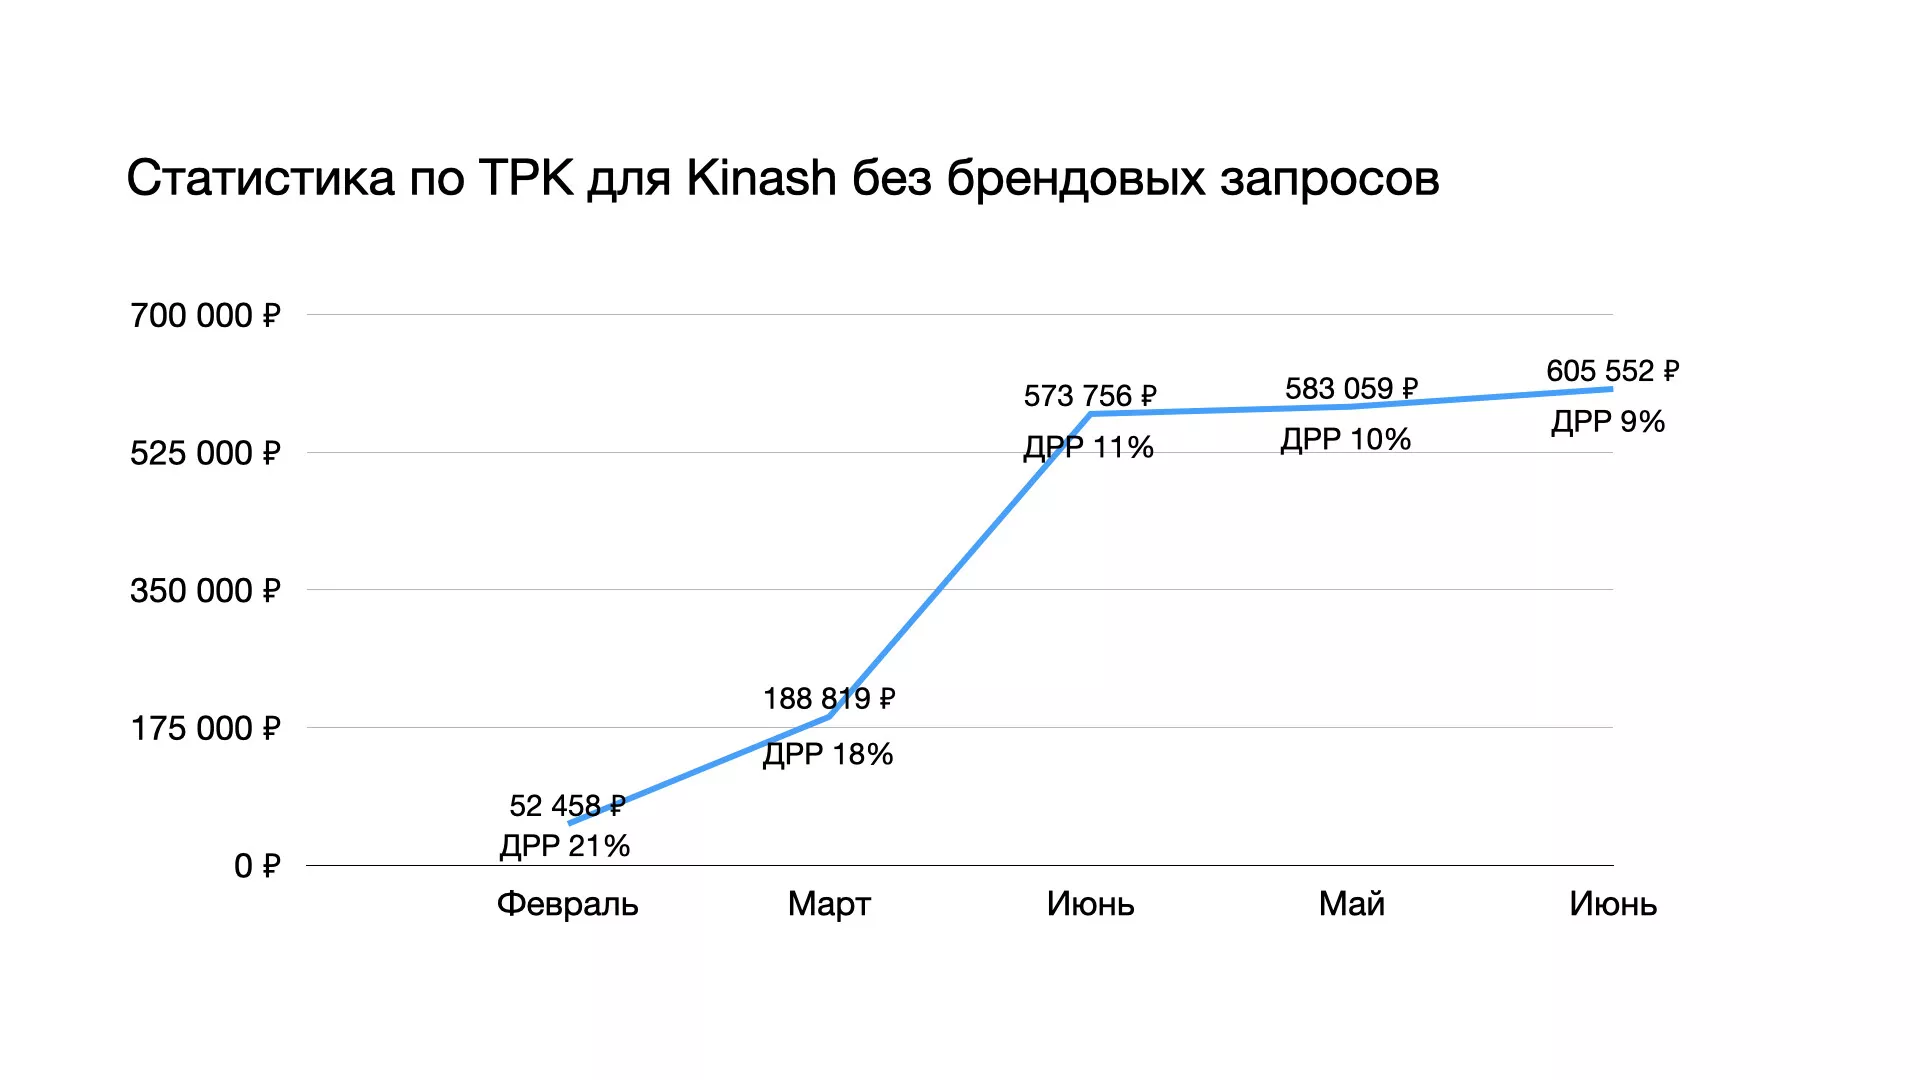 Статистика по ТРК для Kinash